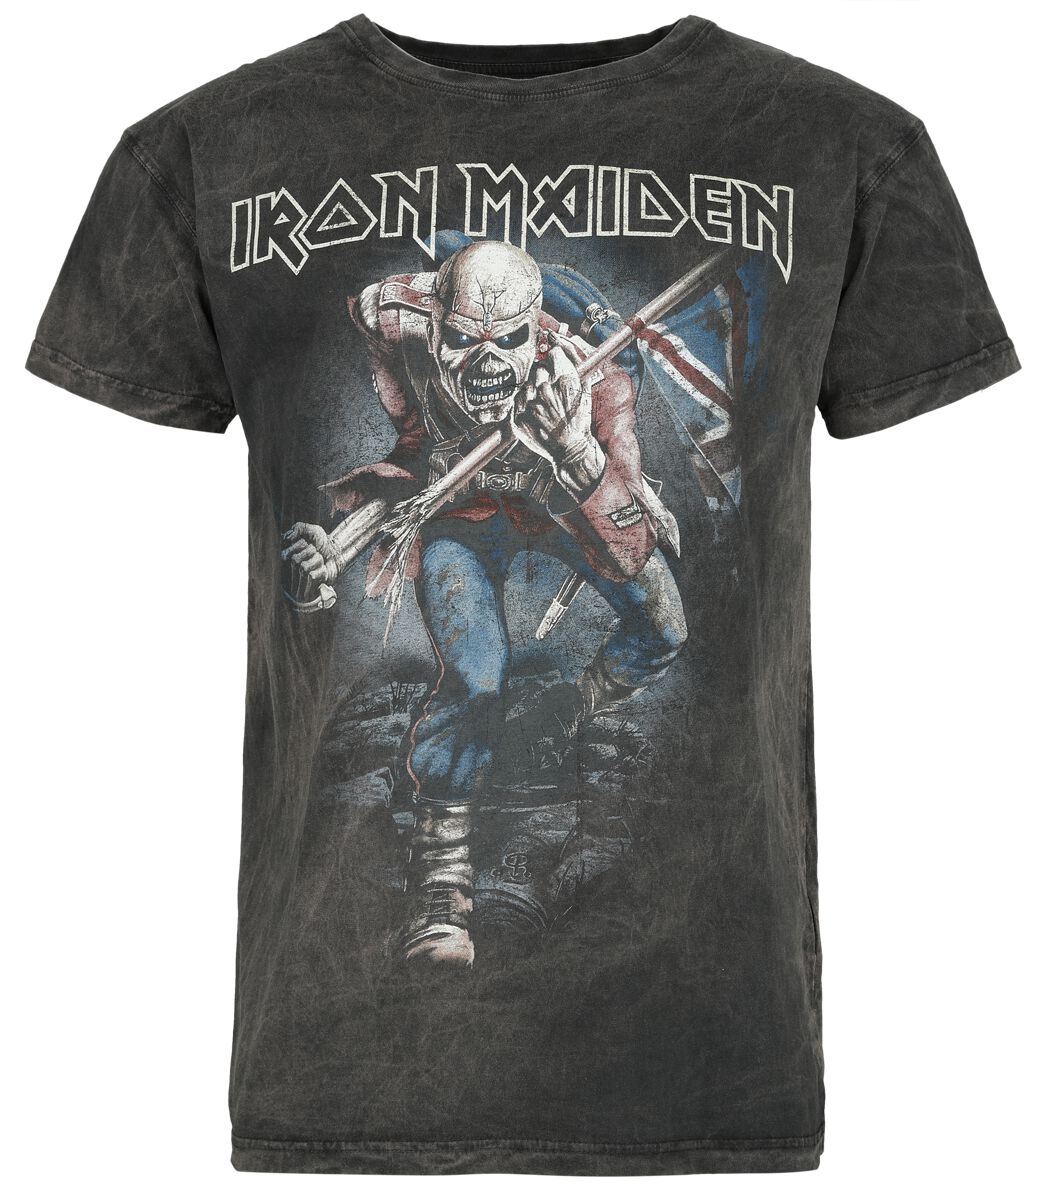 Iron Maiden T-Shirt - The Trooper - S bis 4XL - für Männer - Größe M - grau  - Lizenziertes Merchandise!